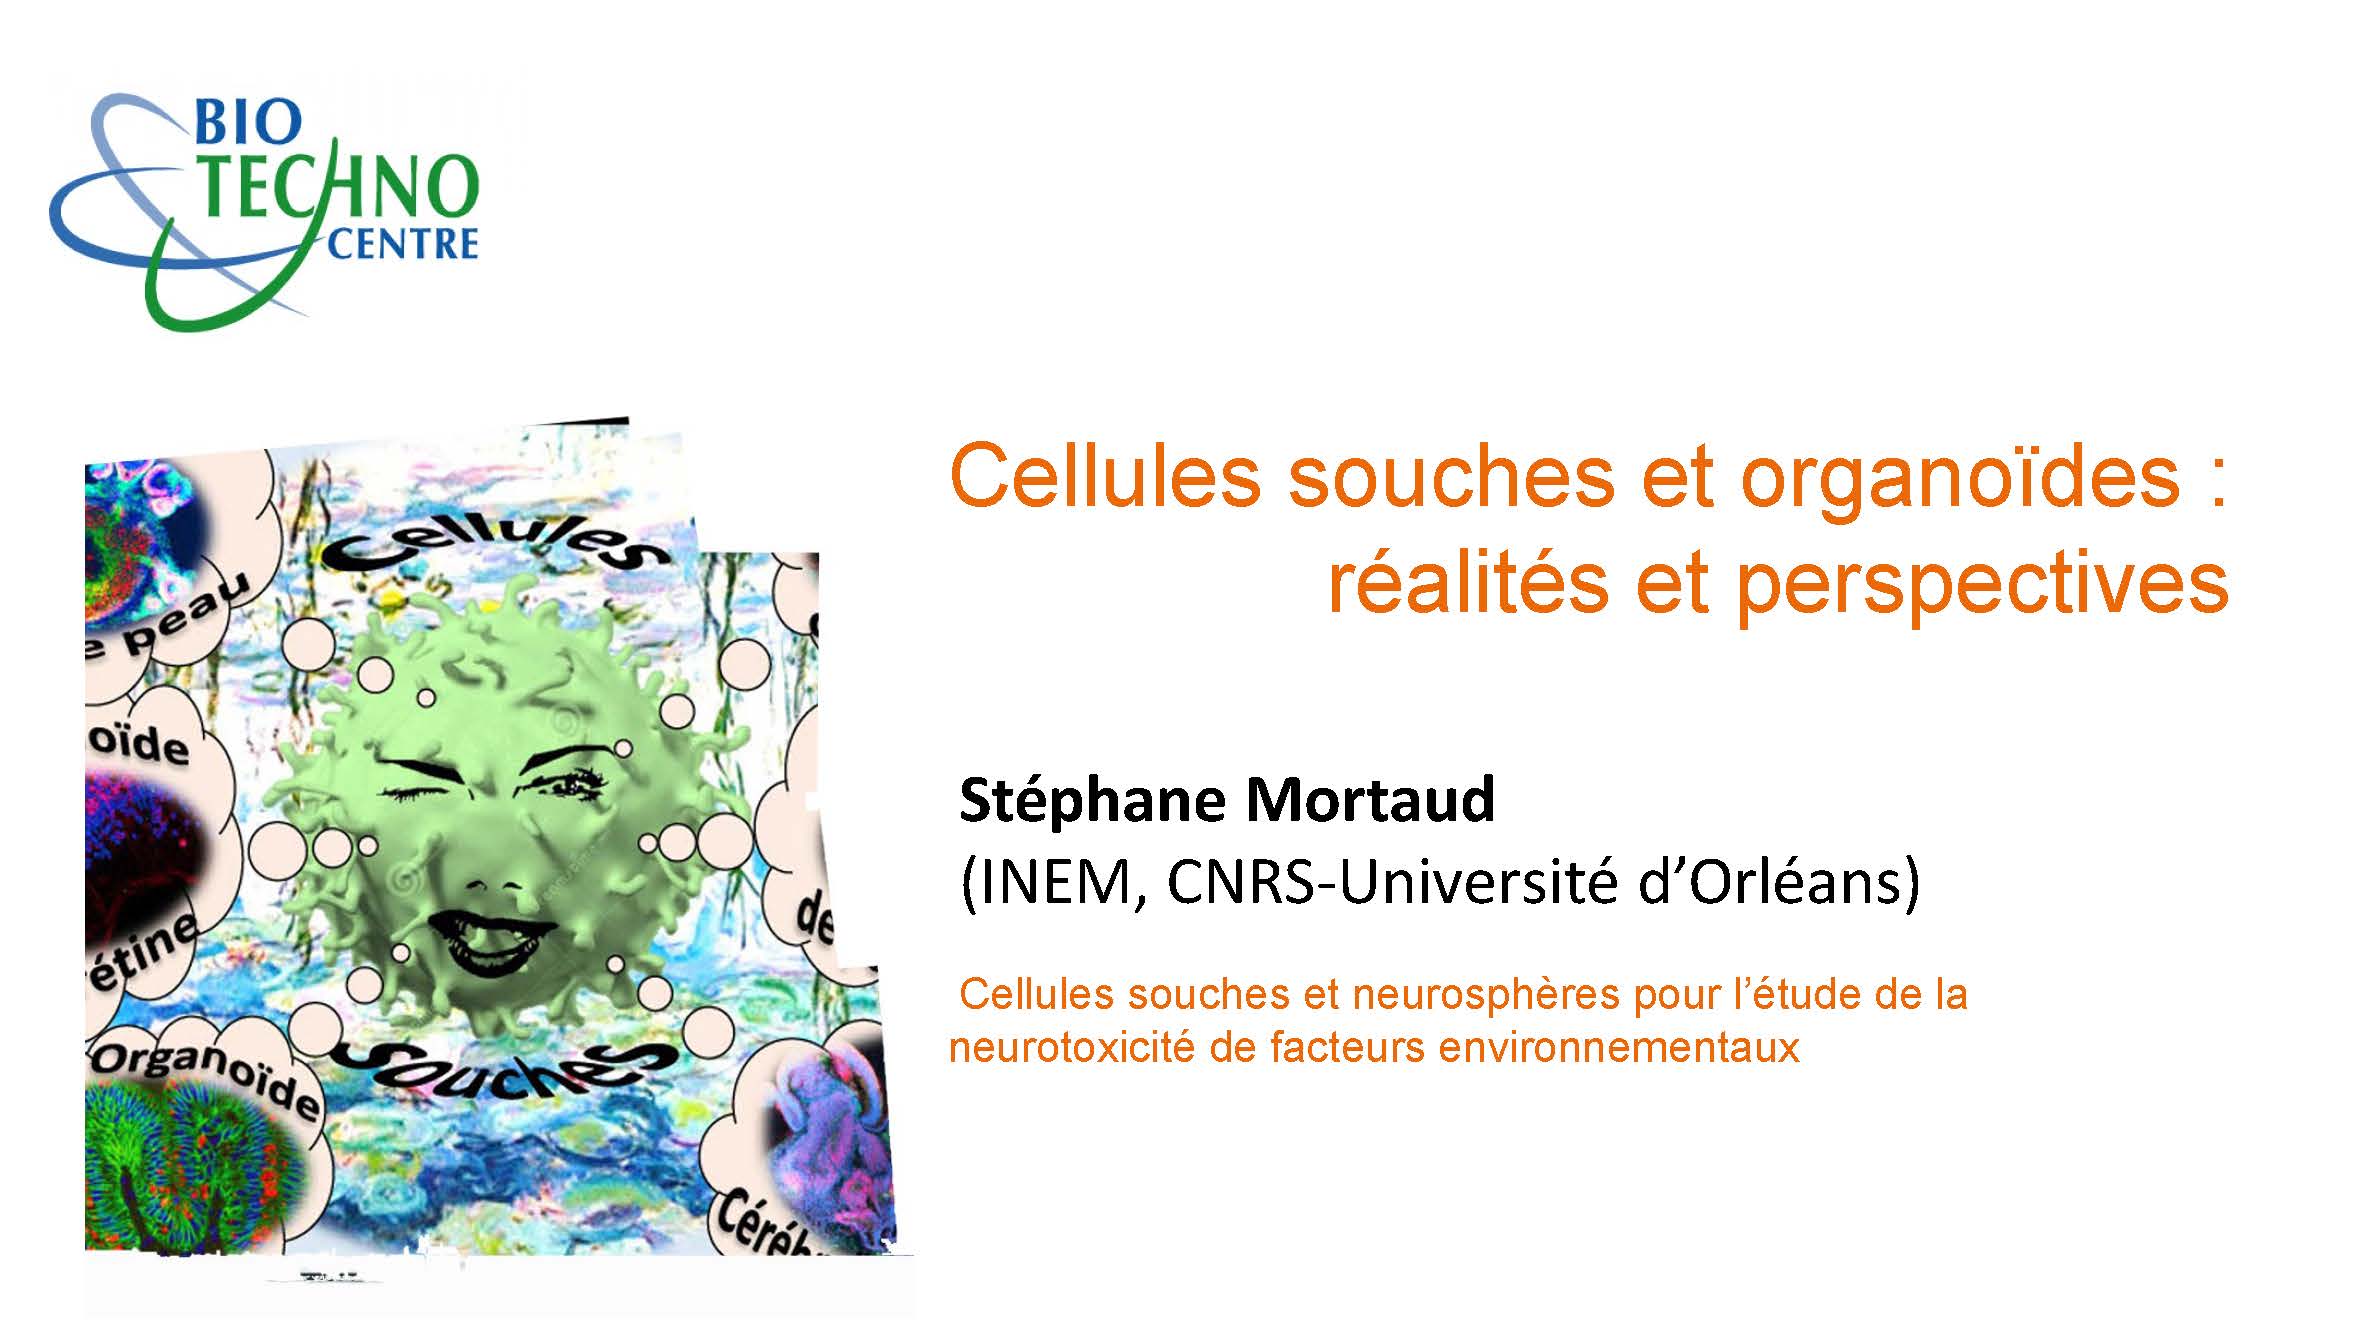 Stéphane Mortaud - Cellules souches et neurosphères pour l’étude de la
neurotoxicité de facteurs environnementaux